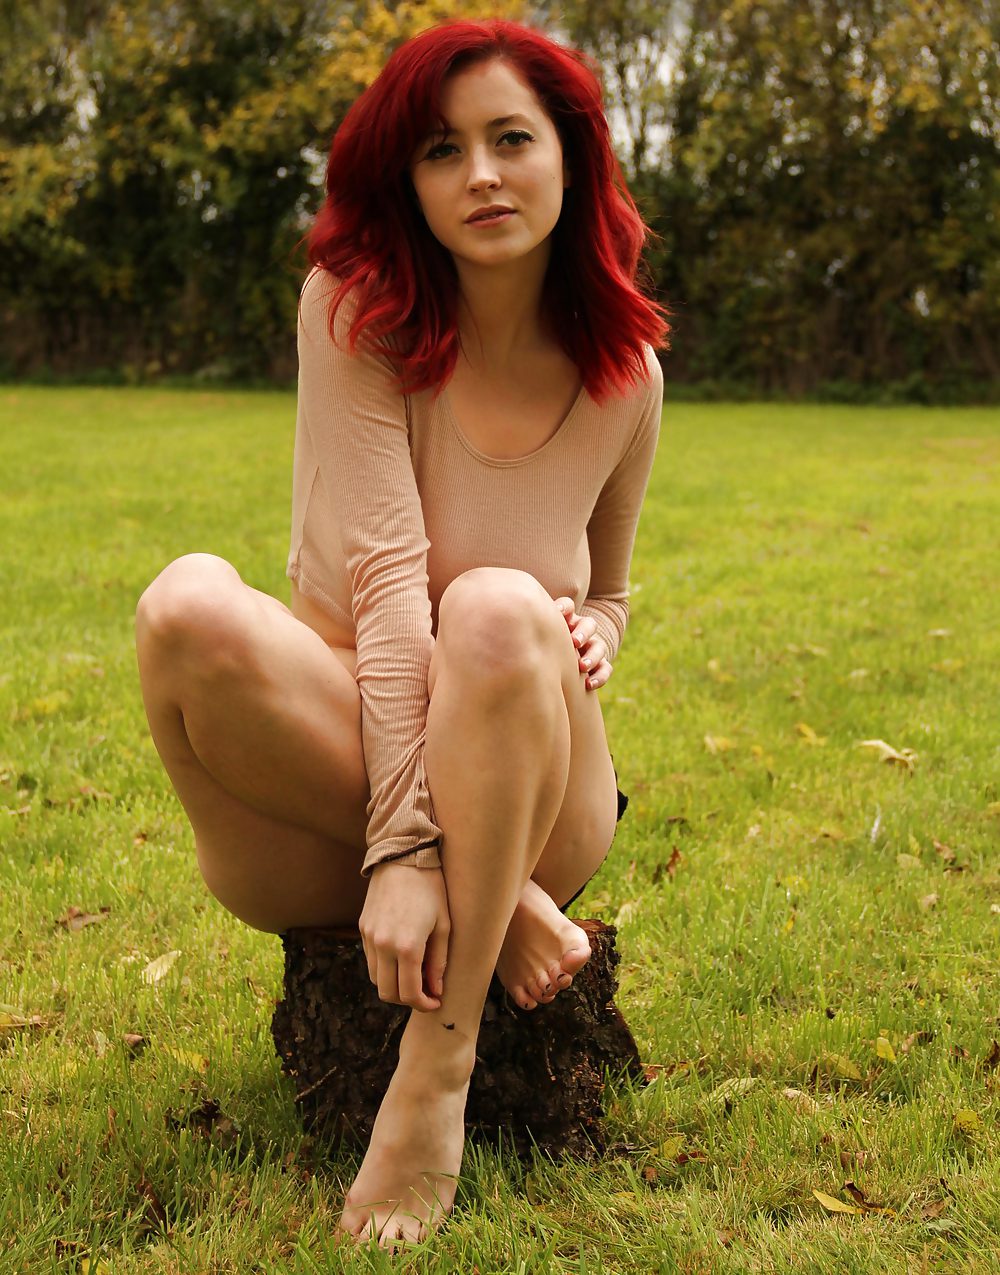 Beautiful curvy redhead posing outdoors #22021365